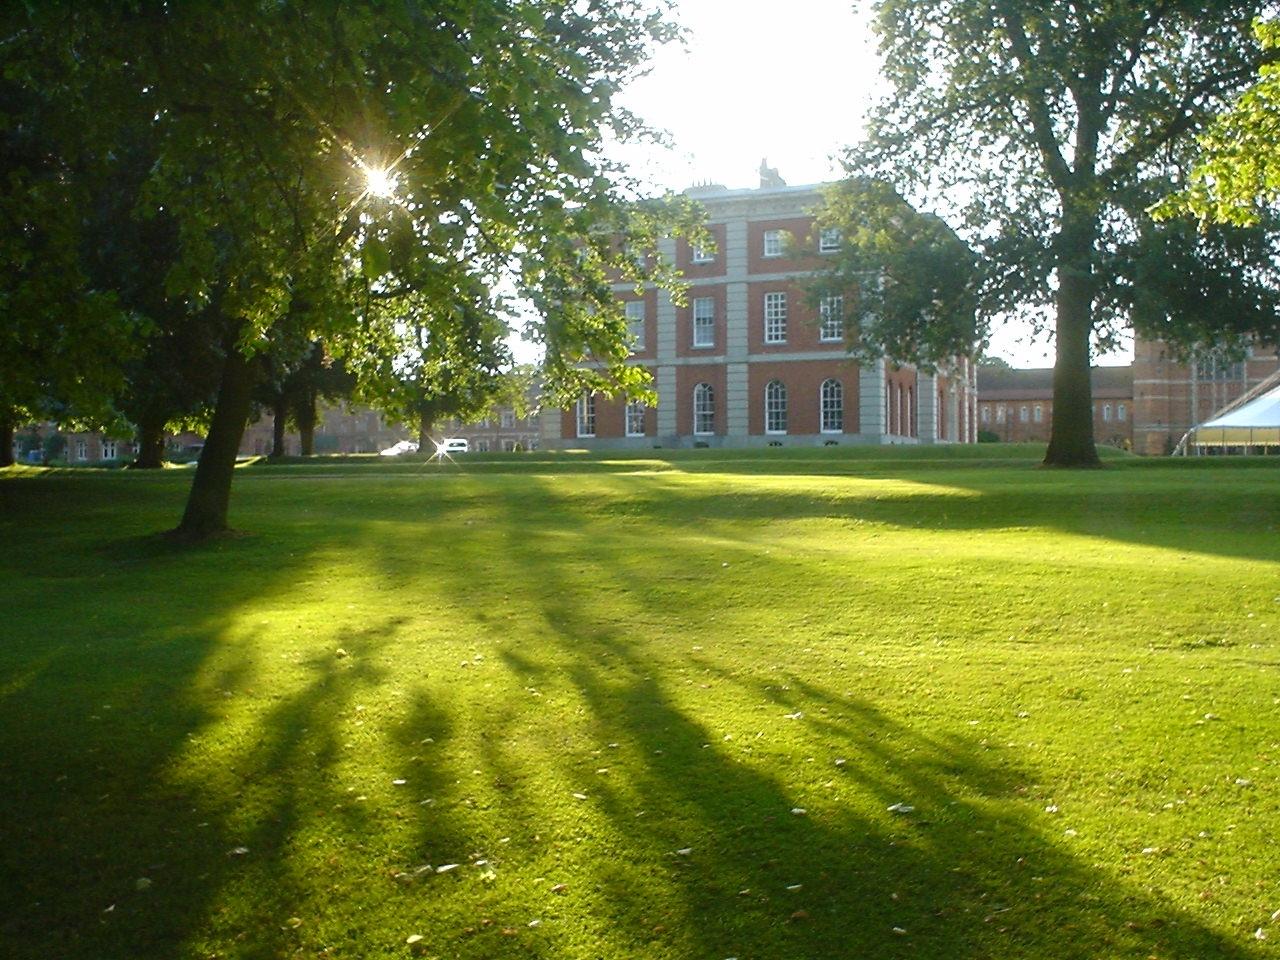 Radley College - вид на территорию и главное здание колледжа